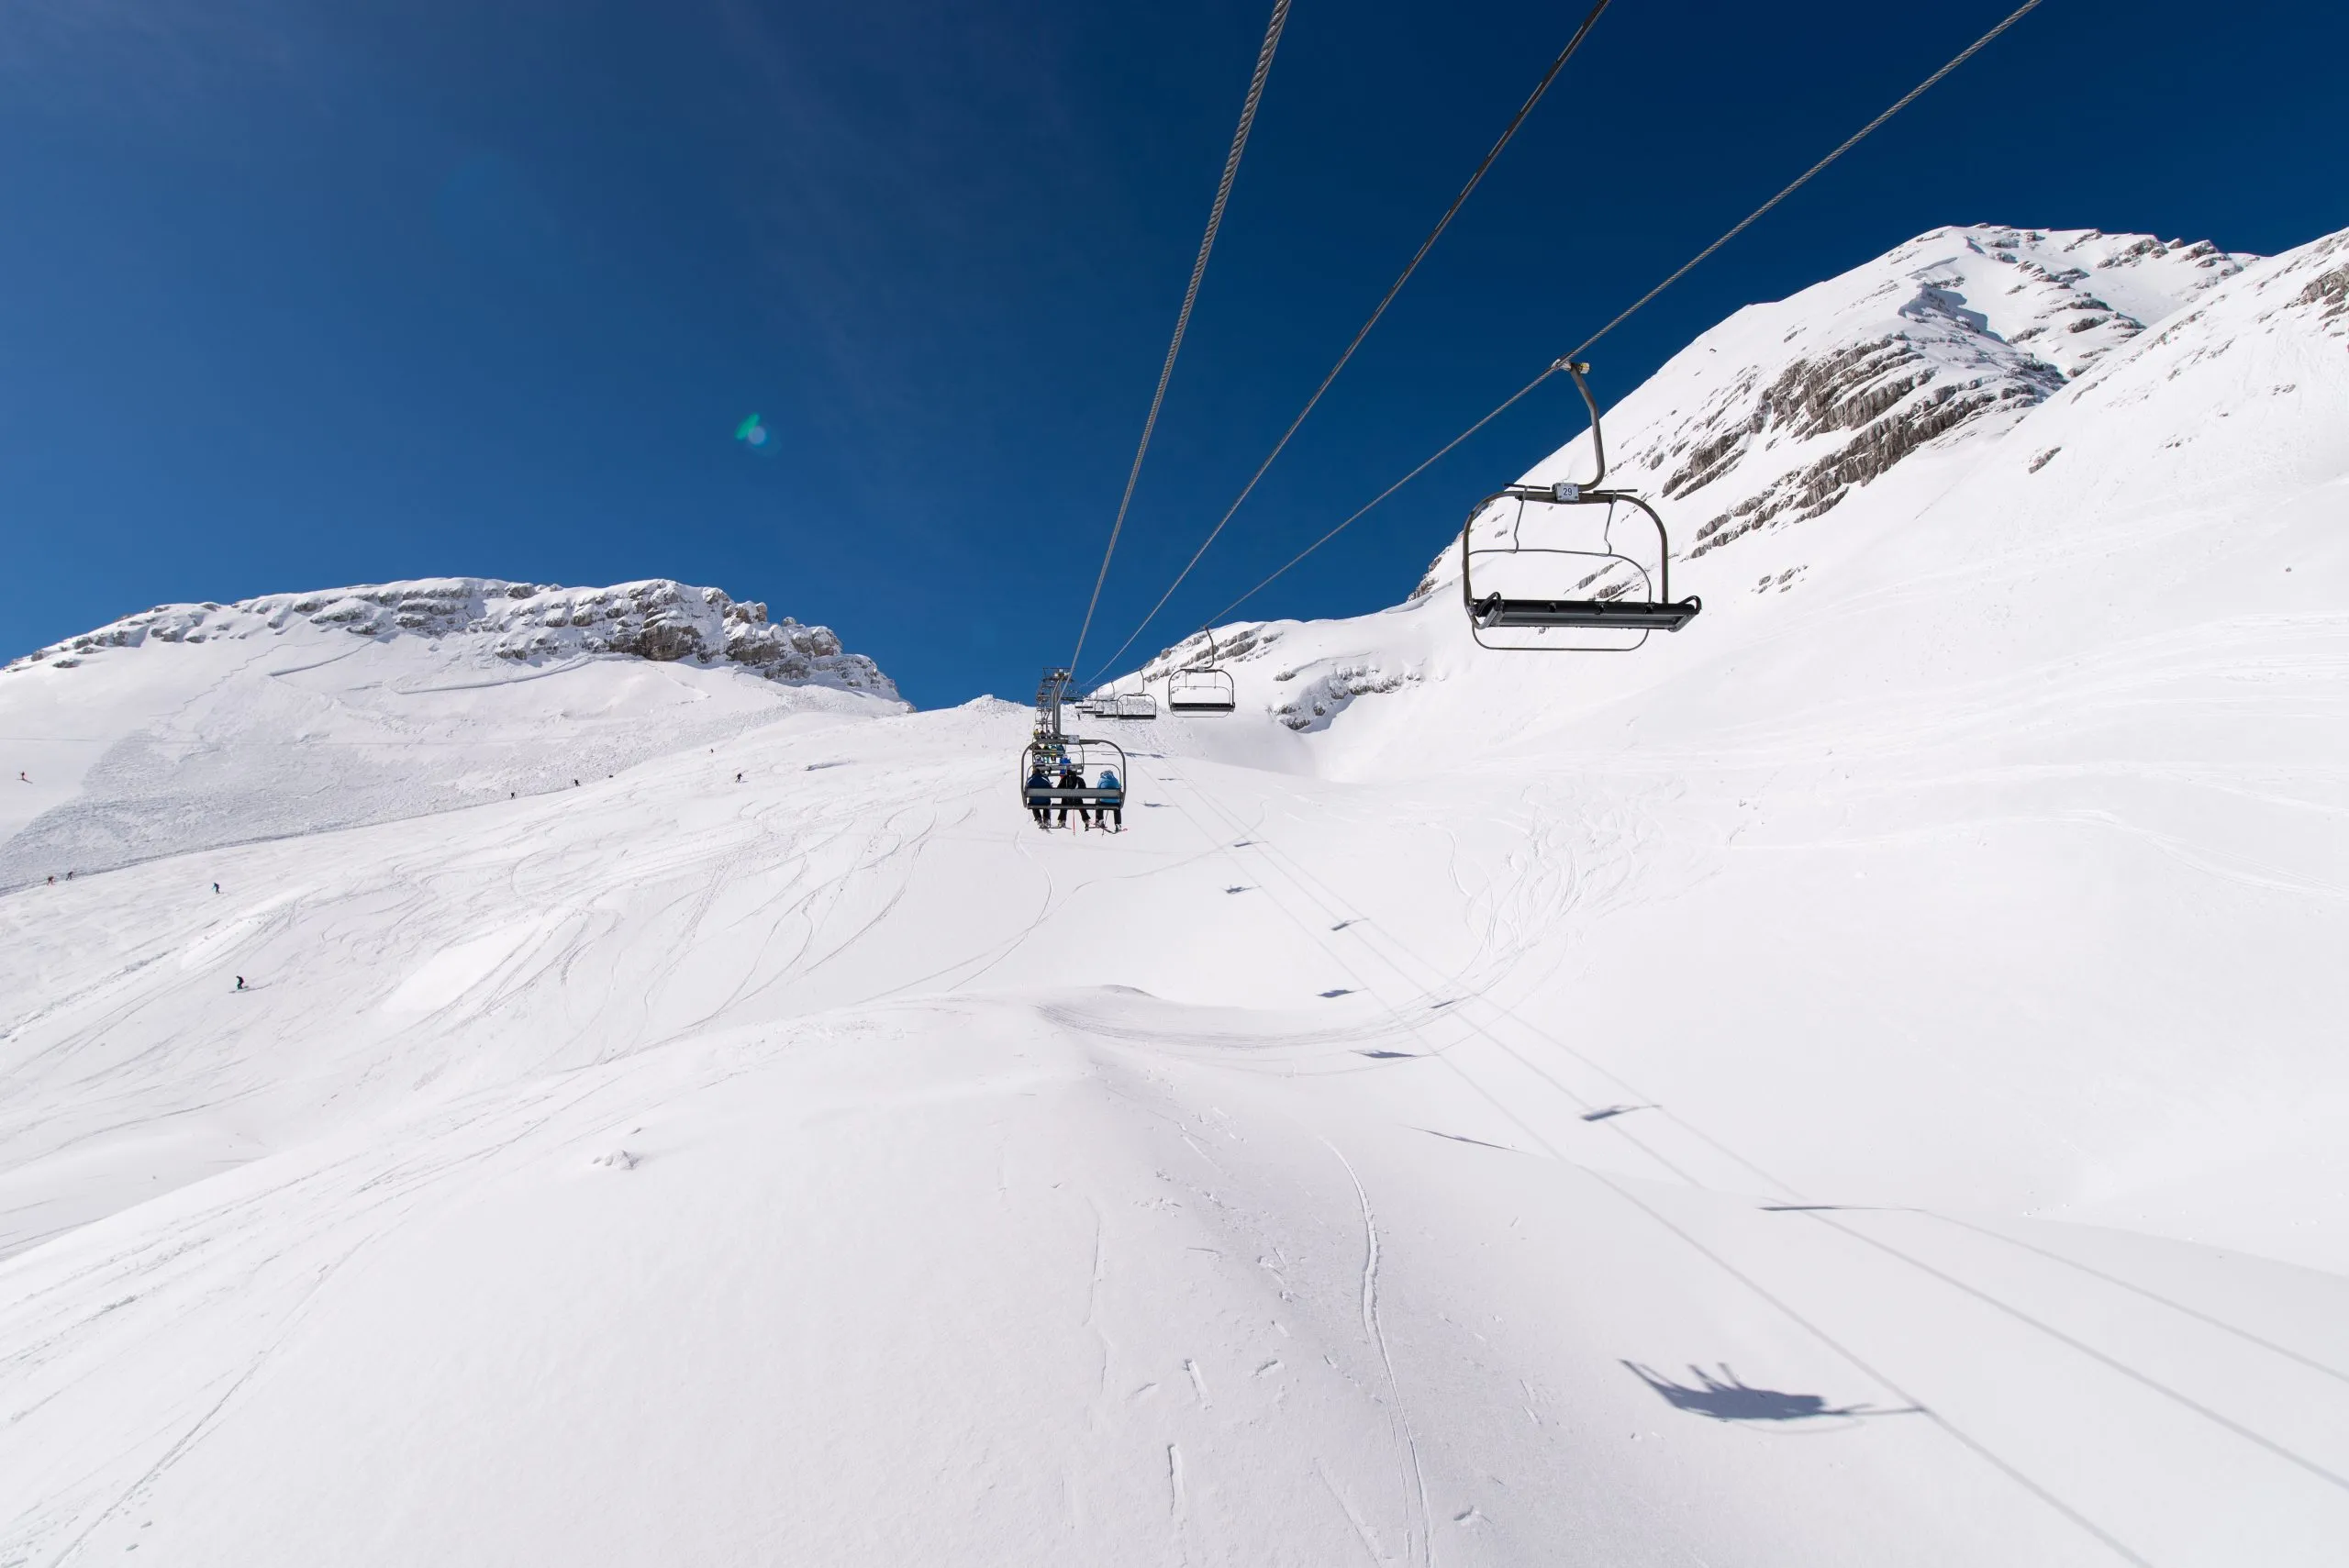 Kanin ski resort ski lift